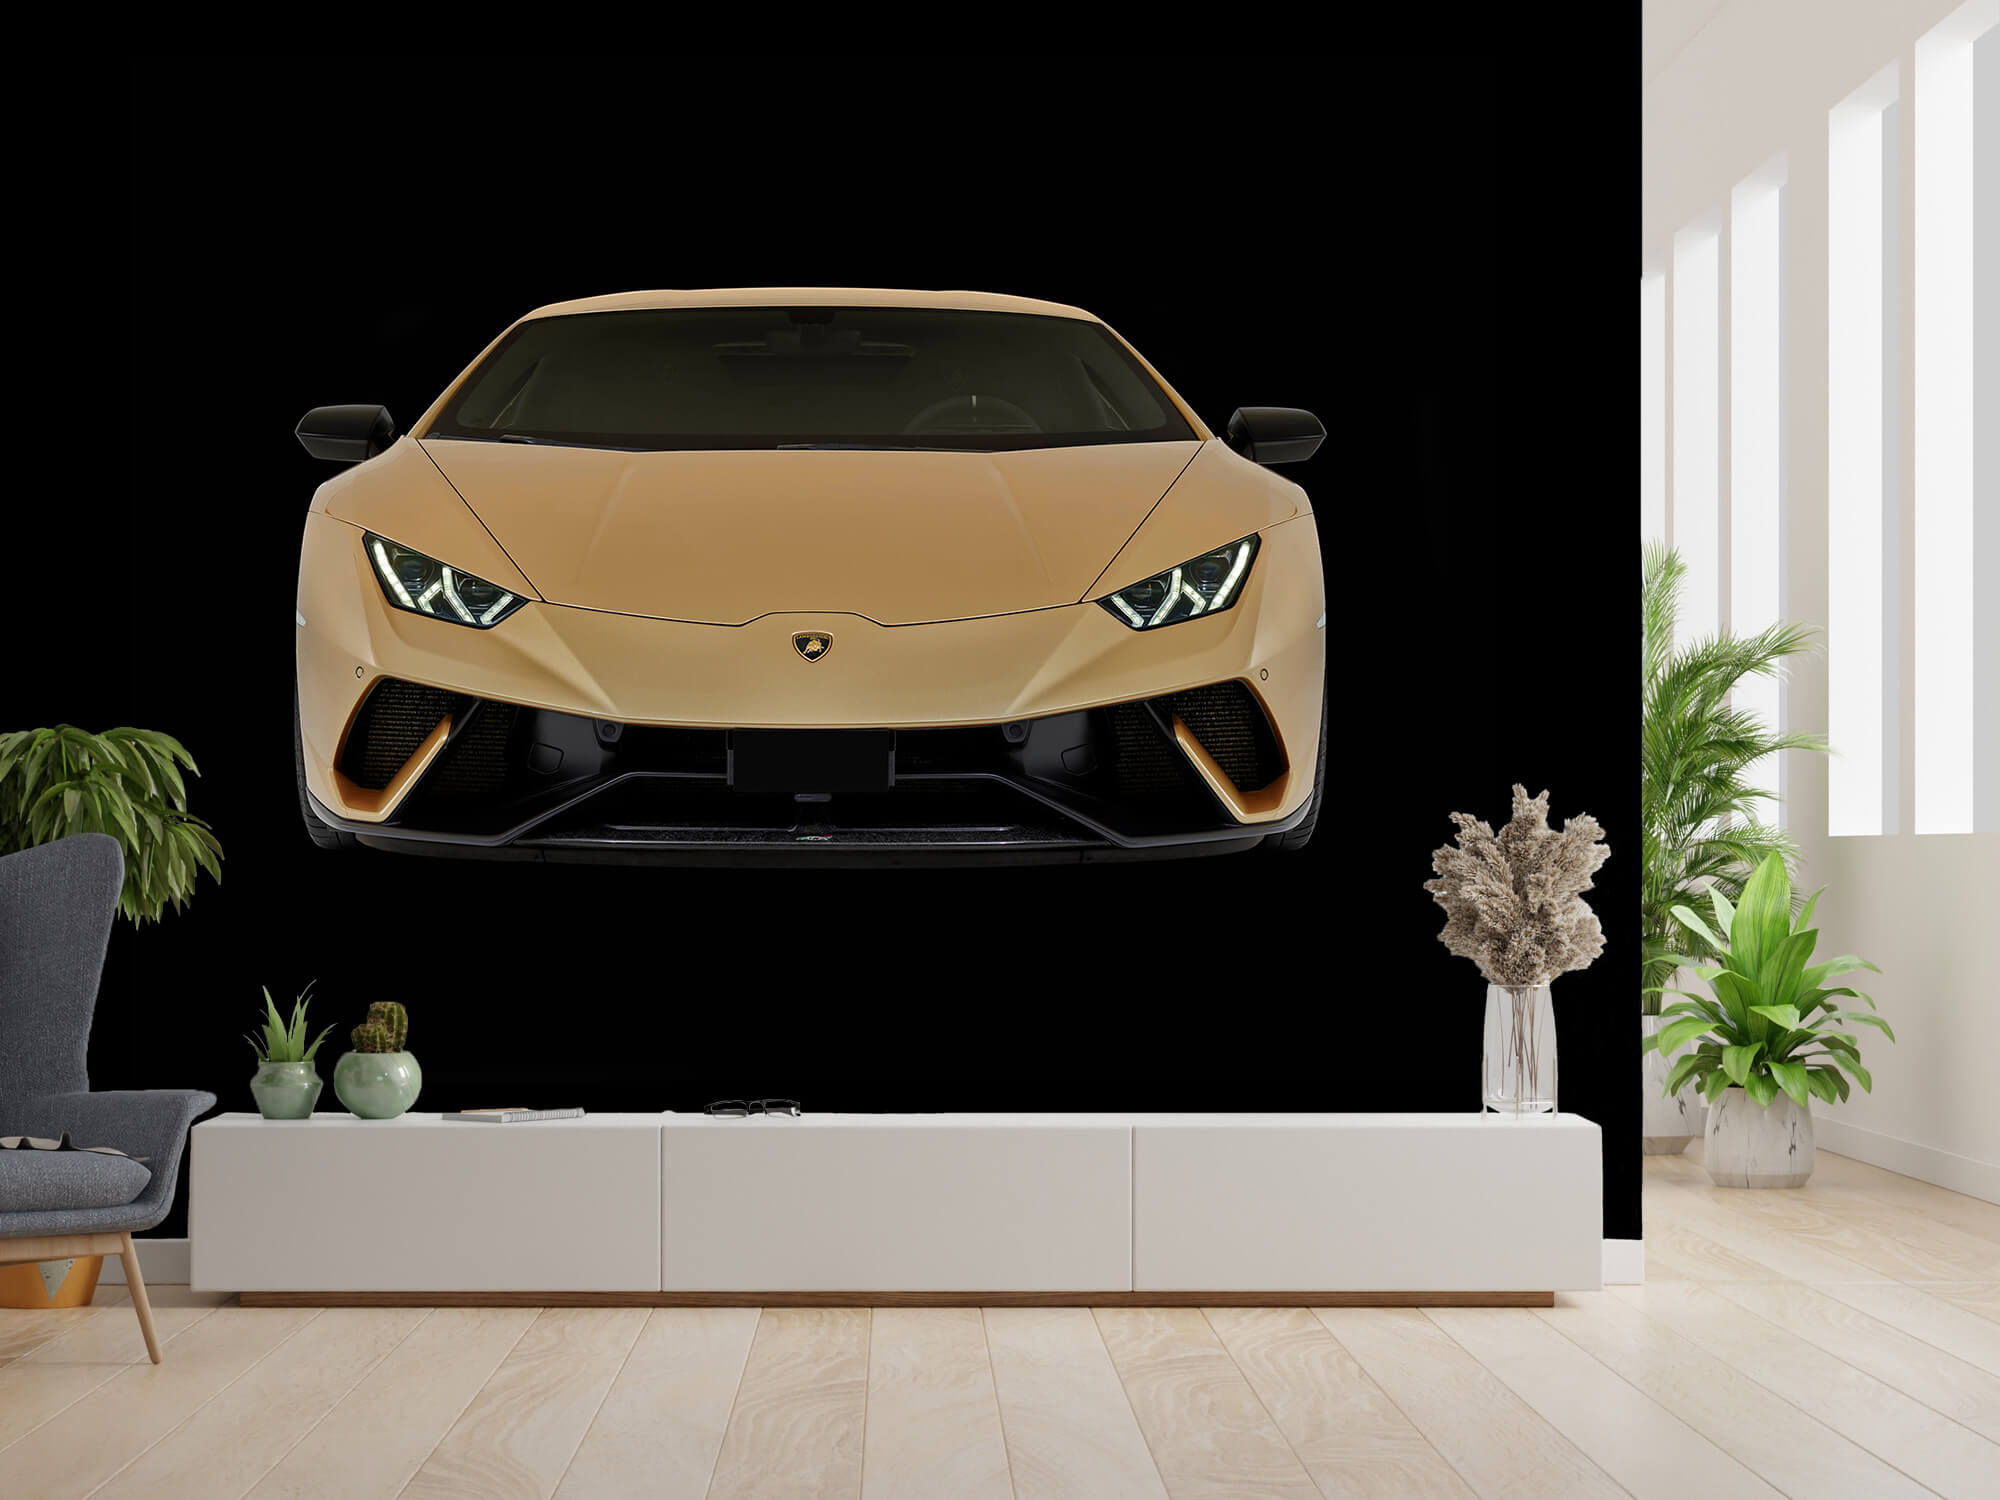 Empapelado Papel pintado con Lamborghini Huracán - frontal, negro - Habitación de adolescentes 2